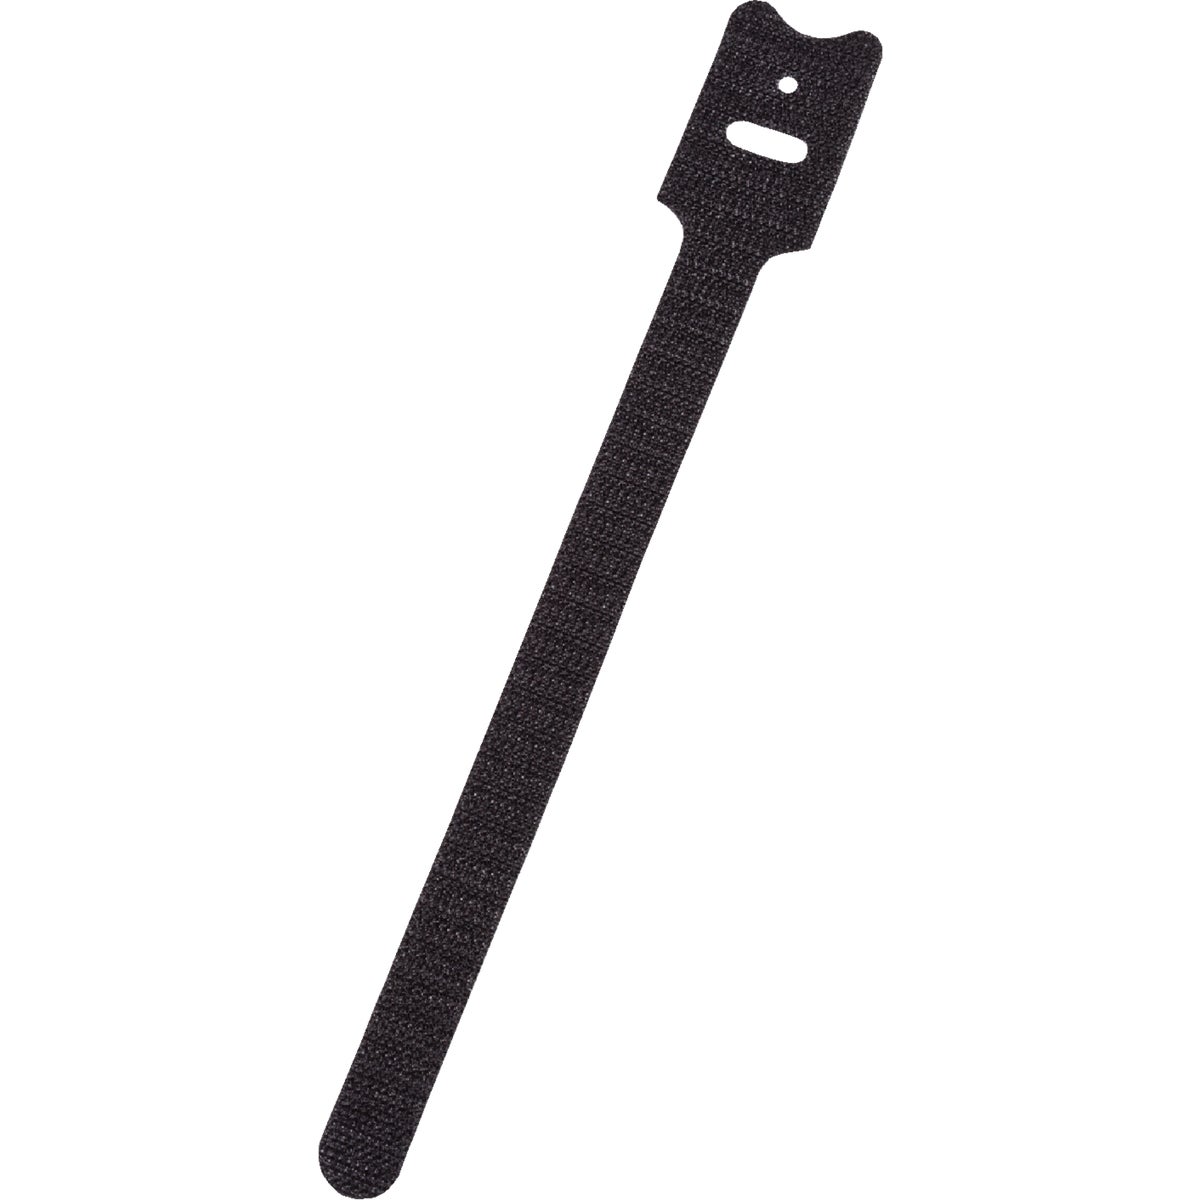 Item 501136, Grip-Strip cable tie with hook and loop fastener.